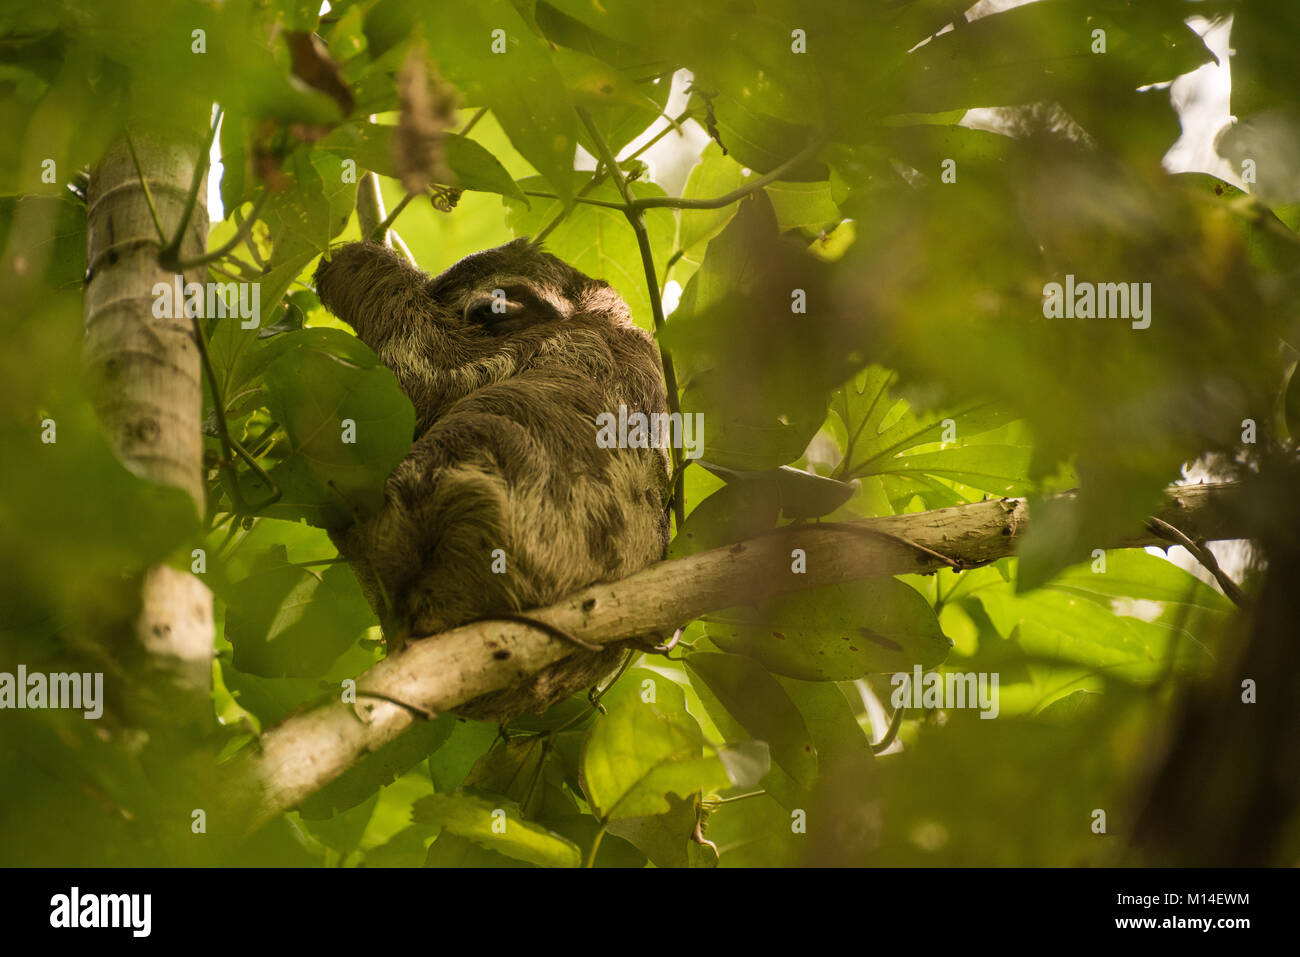 Eine braune throated Faultier, einer der drei toed sloth Arten, schlafen in einem Baum im Urwald des Amazonas. Stockfoto